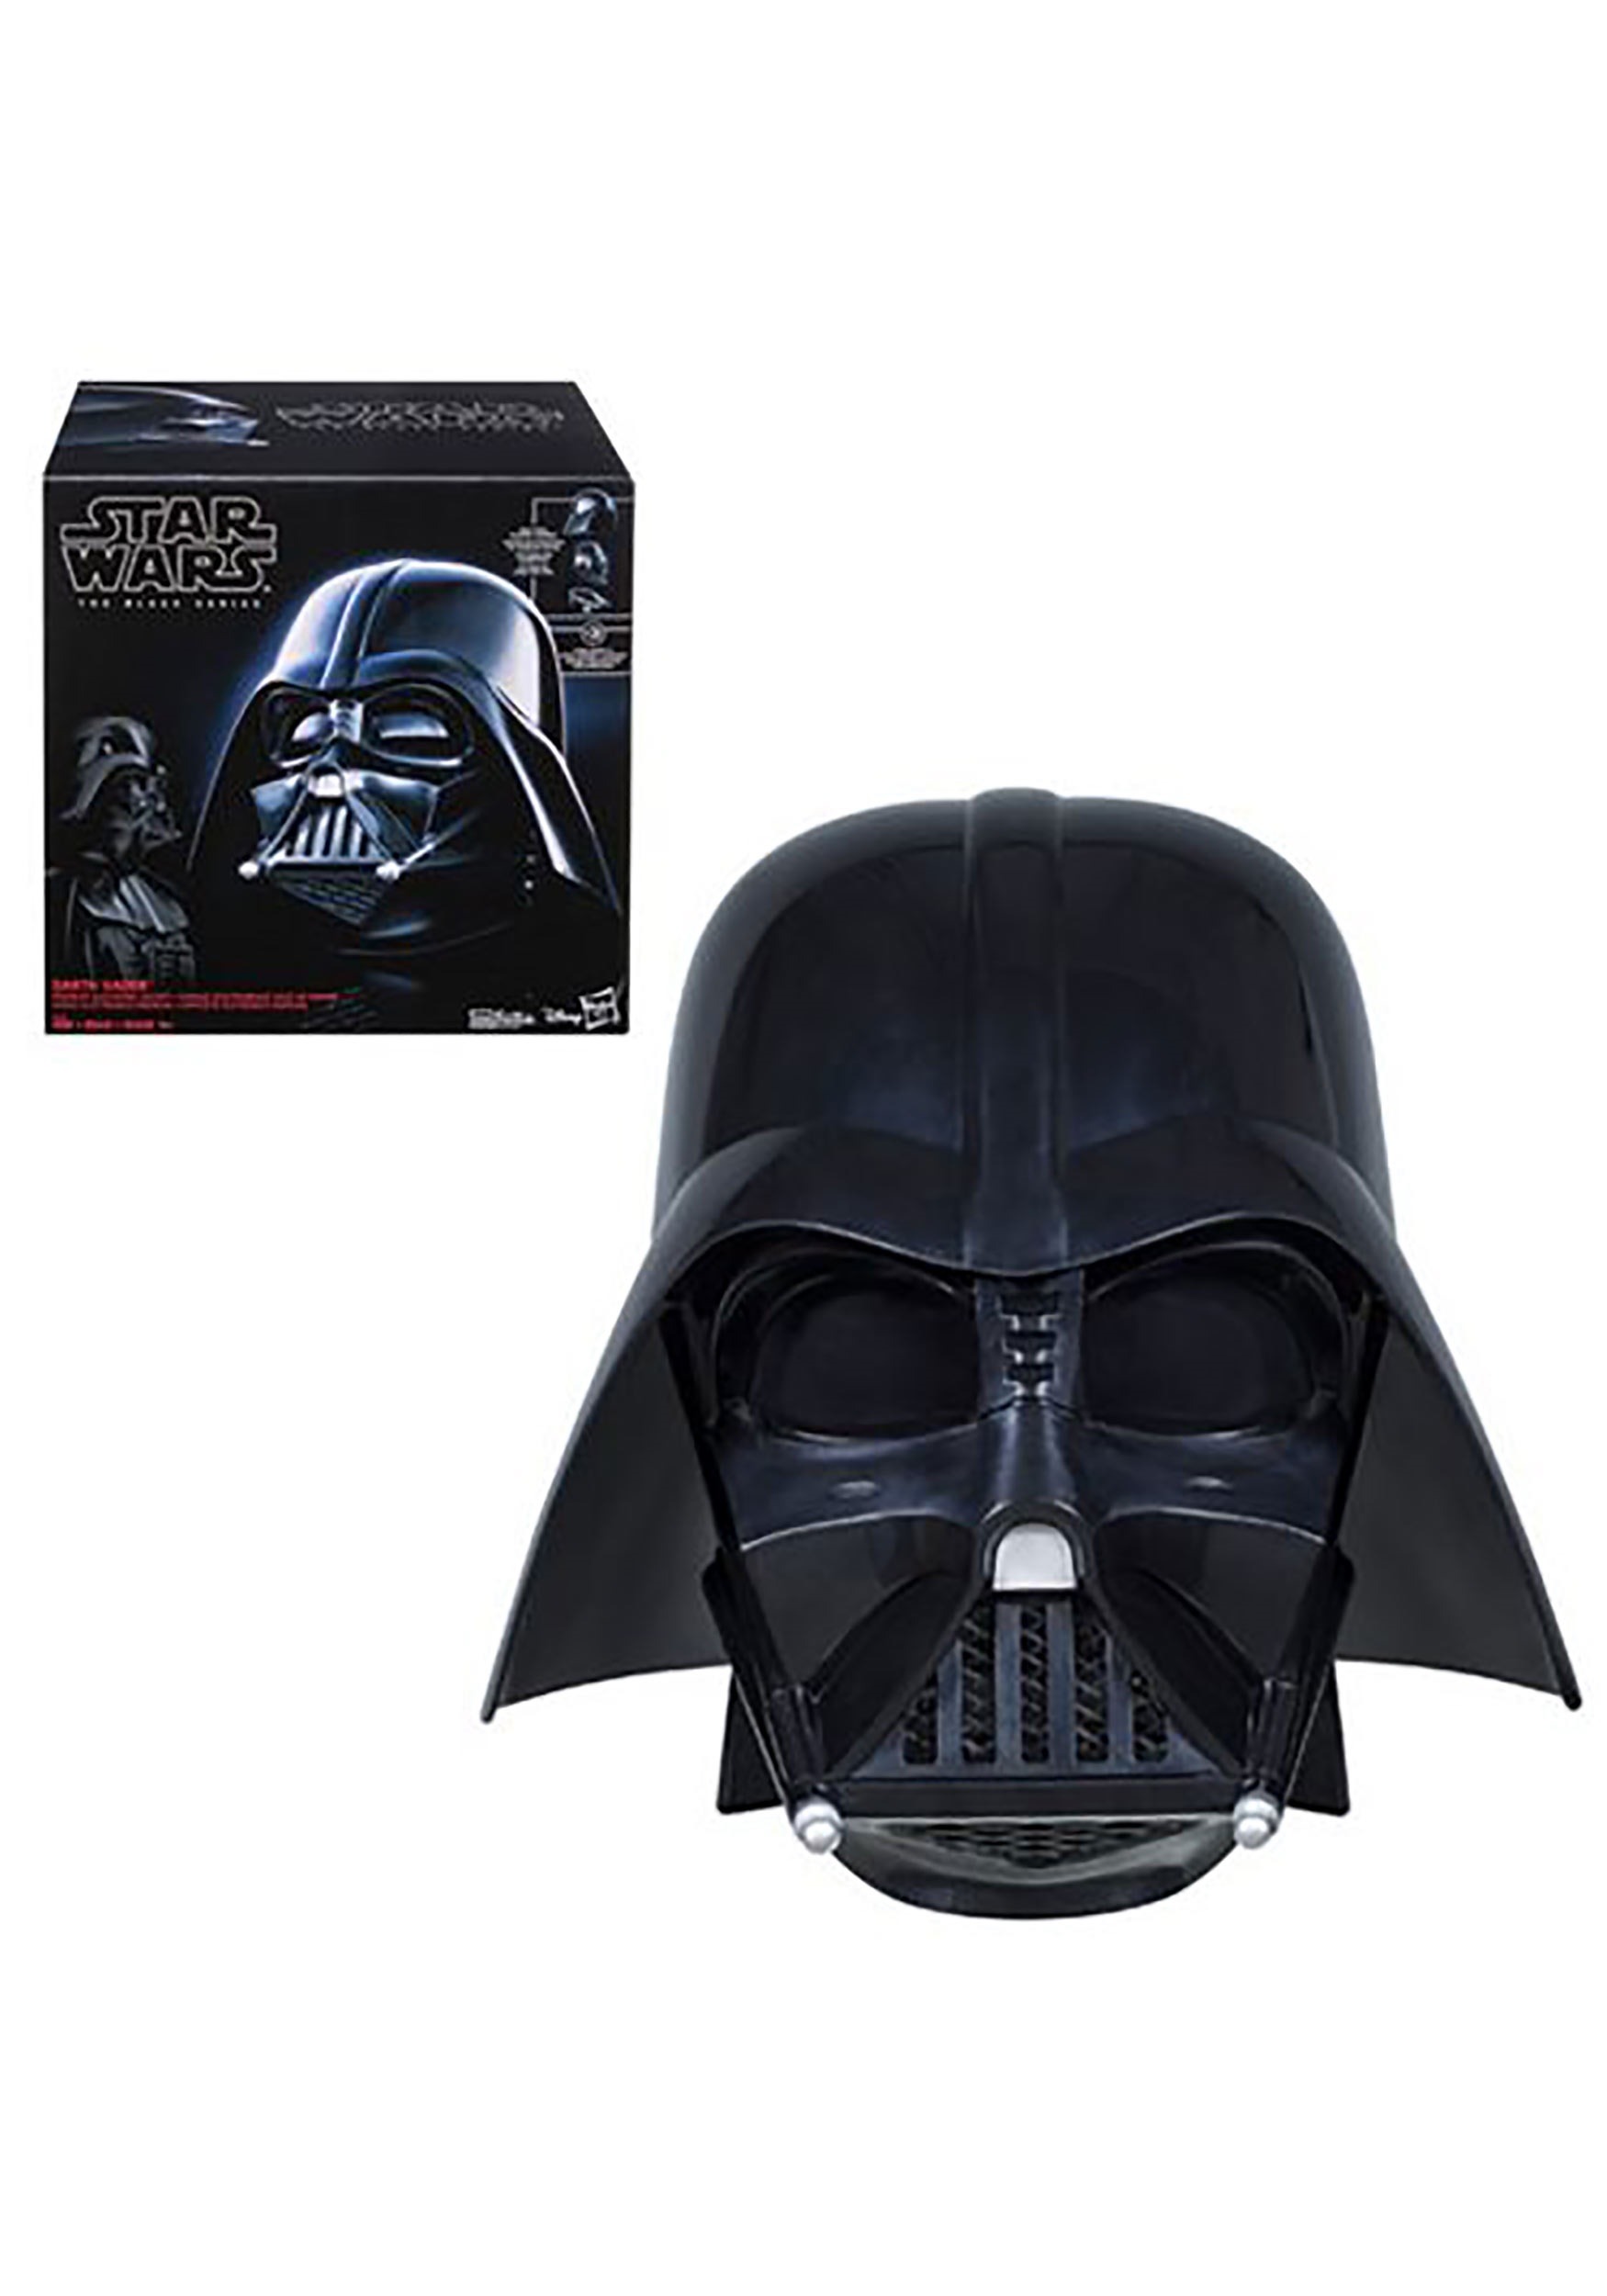 Black Series Star Wars Darth Vader Helmet